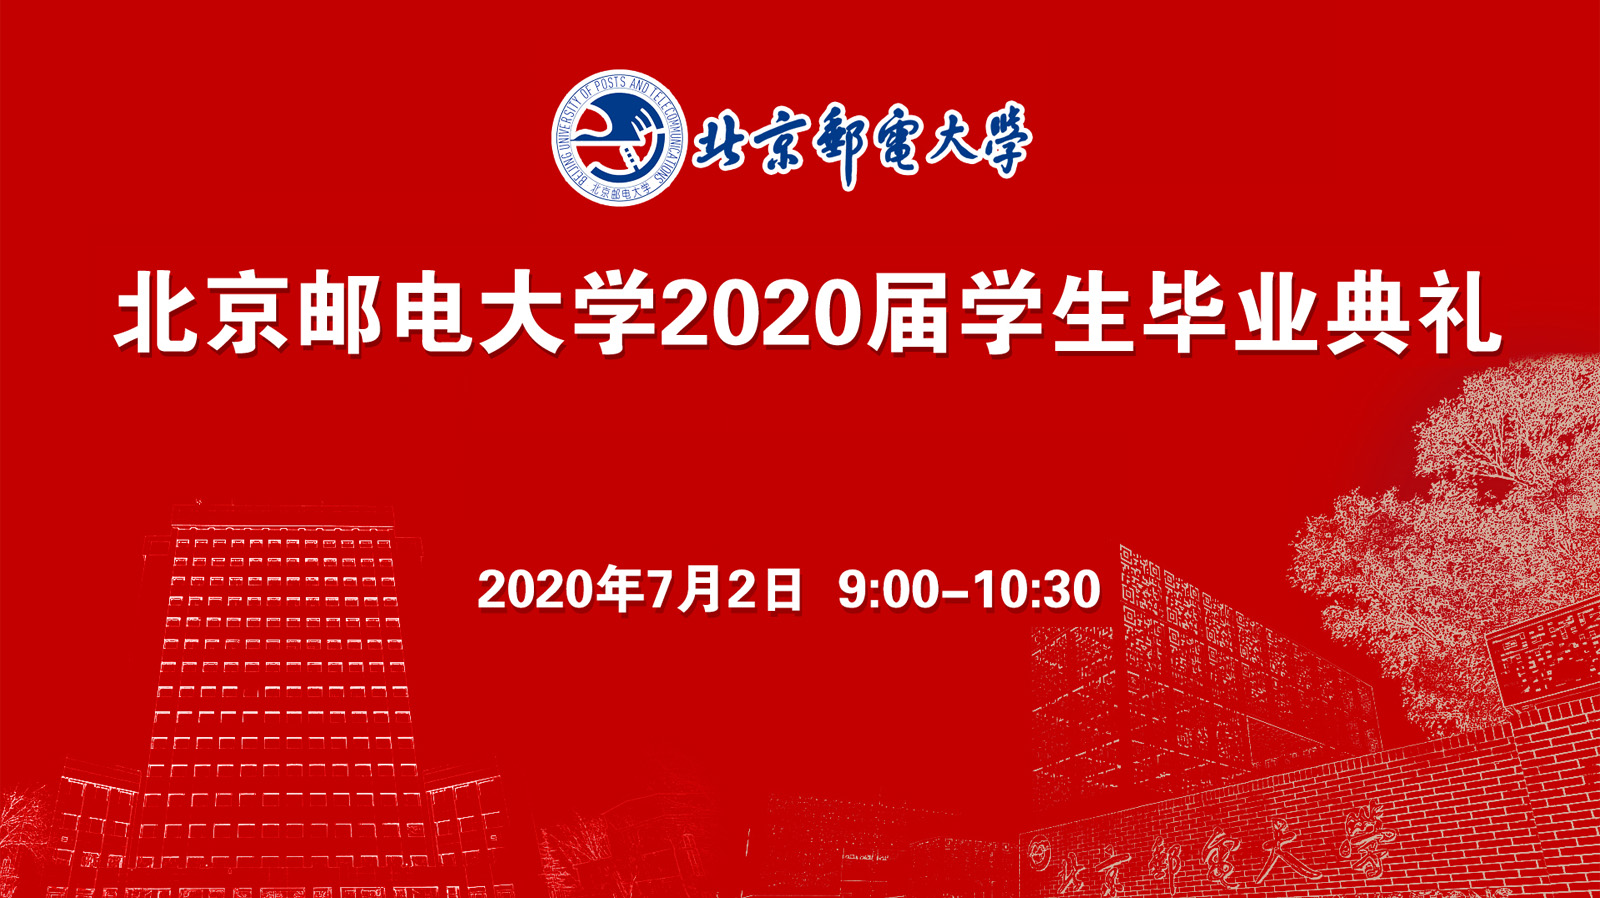 北京邮电大学2020届学生毕业典礼